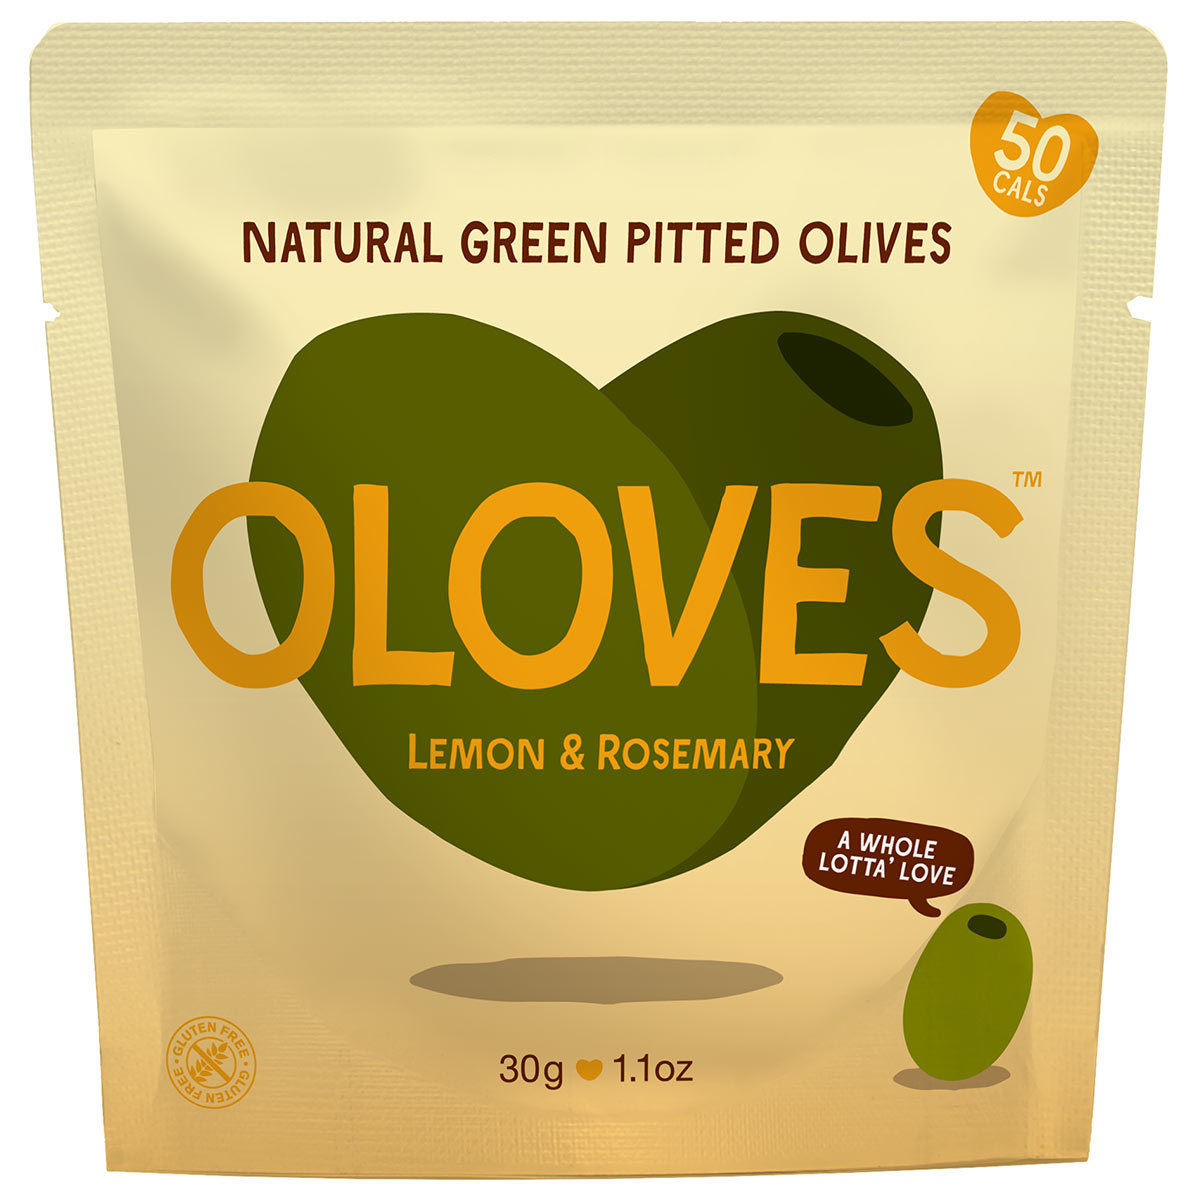 Oloves Lemon & Rosemary Natural Green Pitted Olives, 20 x 30g